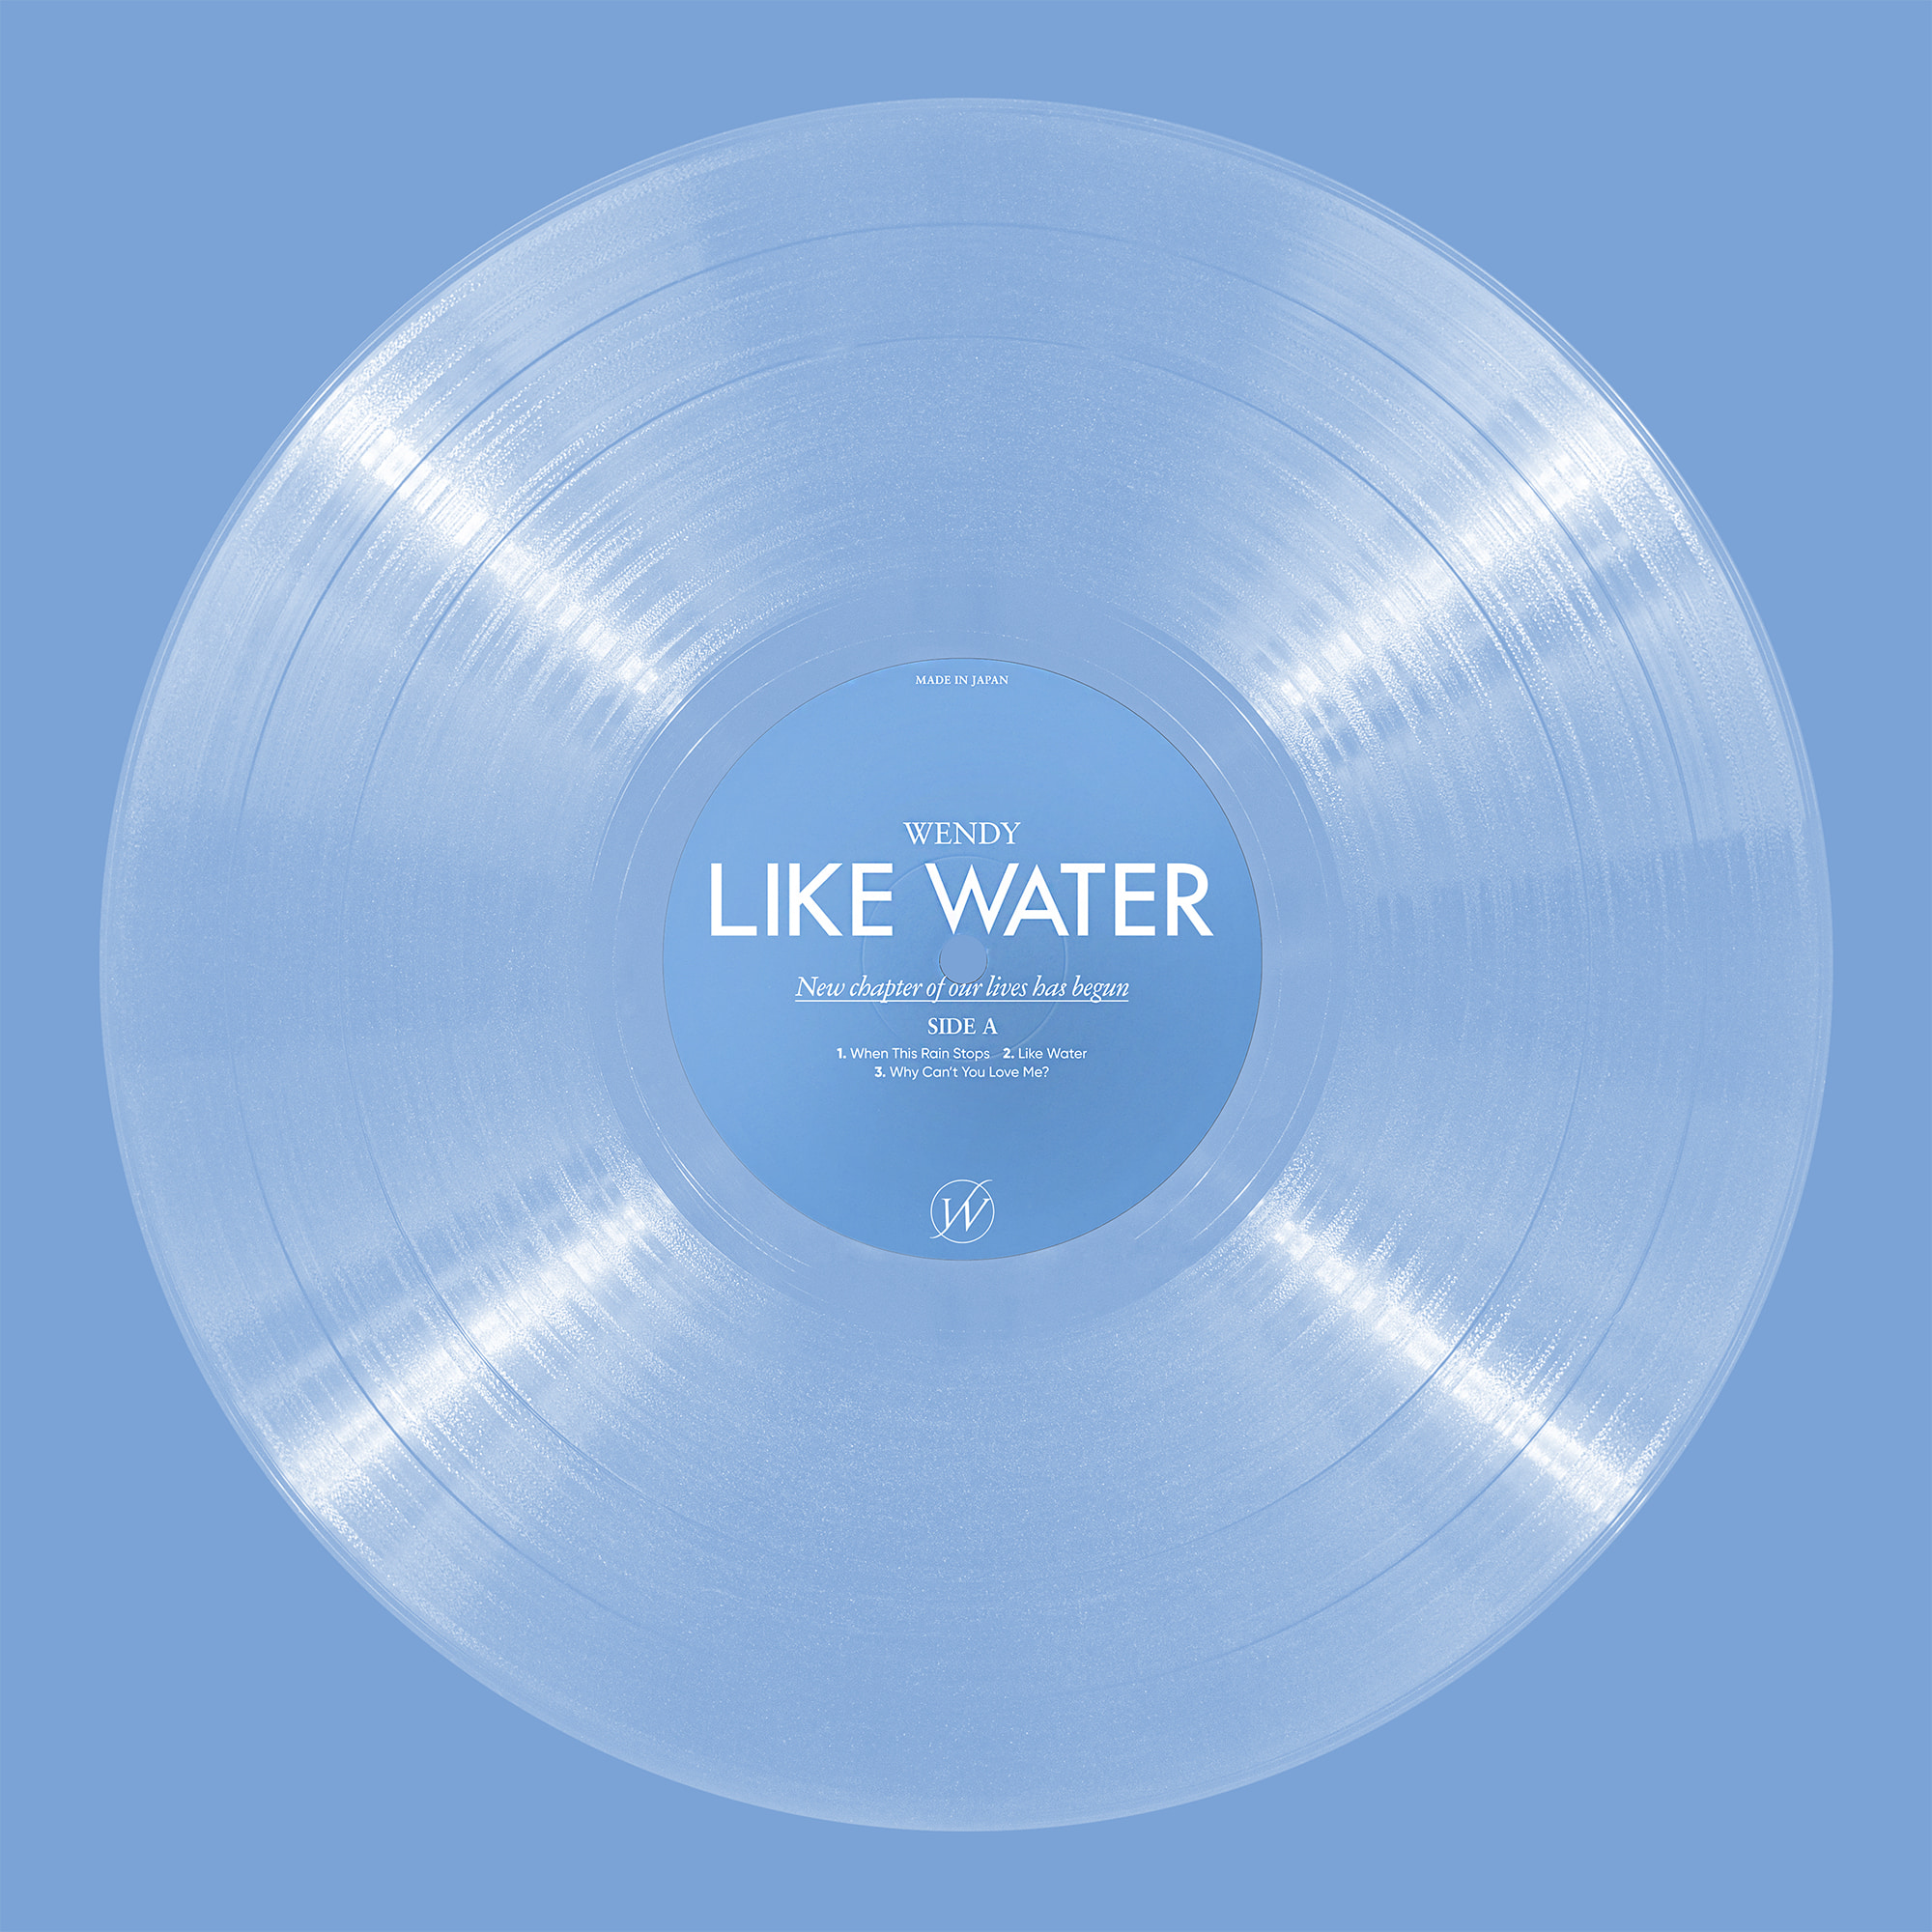 웬디(WENDY) - 미니 1집 [Like Water] (LP Ver.) (초회한정반)케이팝스토어(kpop store)